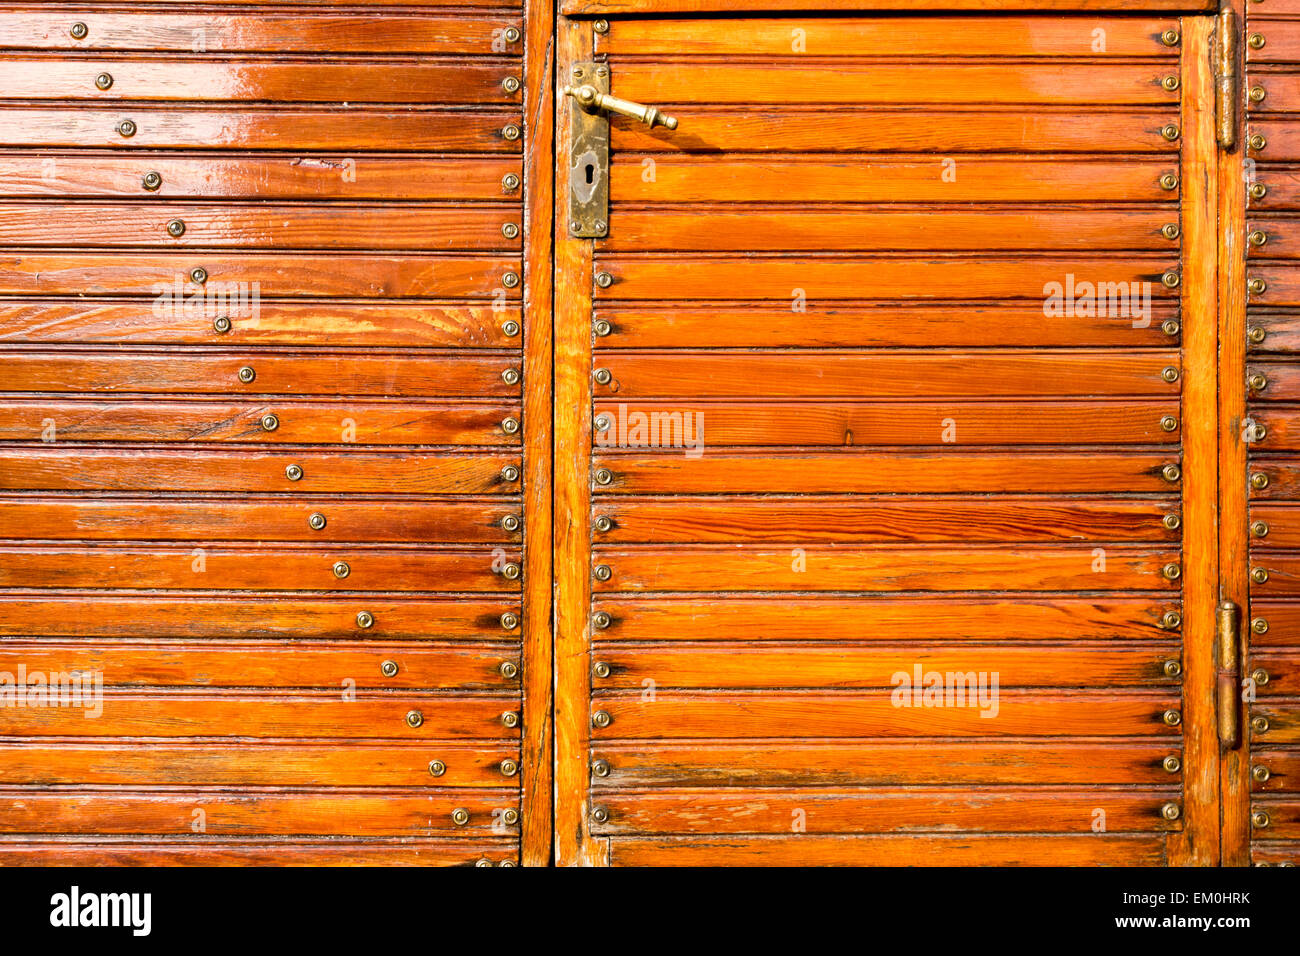 DEU/Deutschland, BAB 8, Türe un einem alten Schaustellerwagen Holzlattenstruktur, Schrauben, Beschläge [© 2014 Christoph Herm Foto Stock